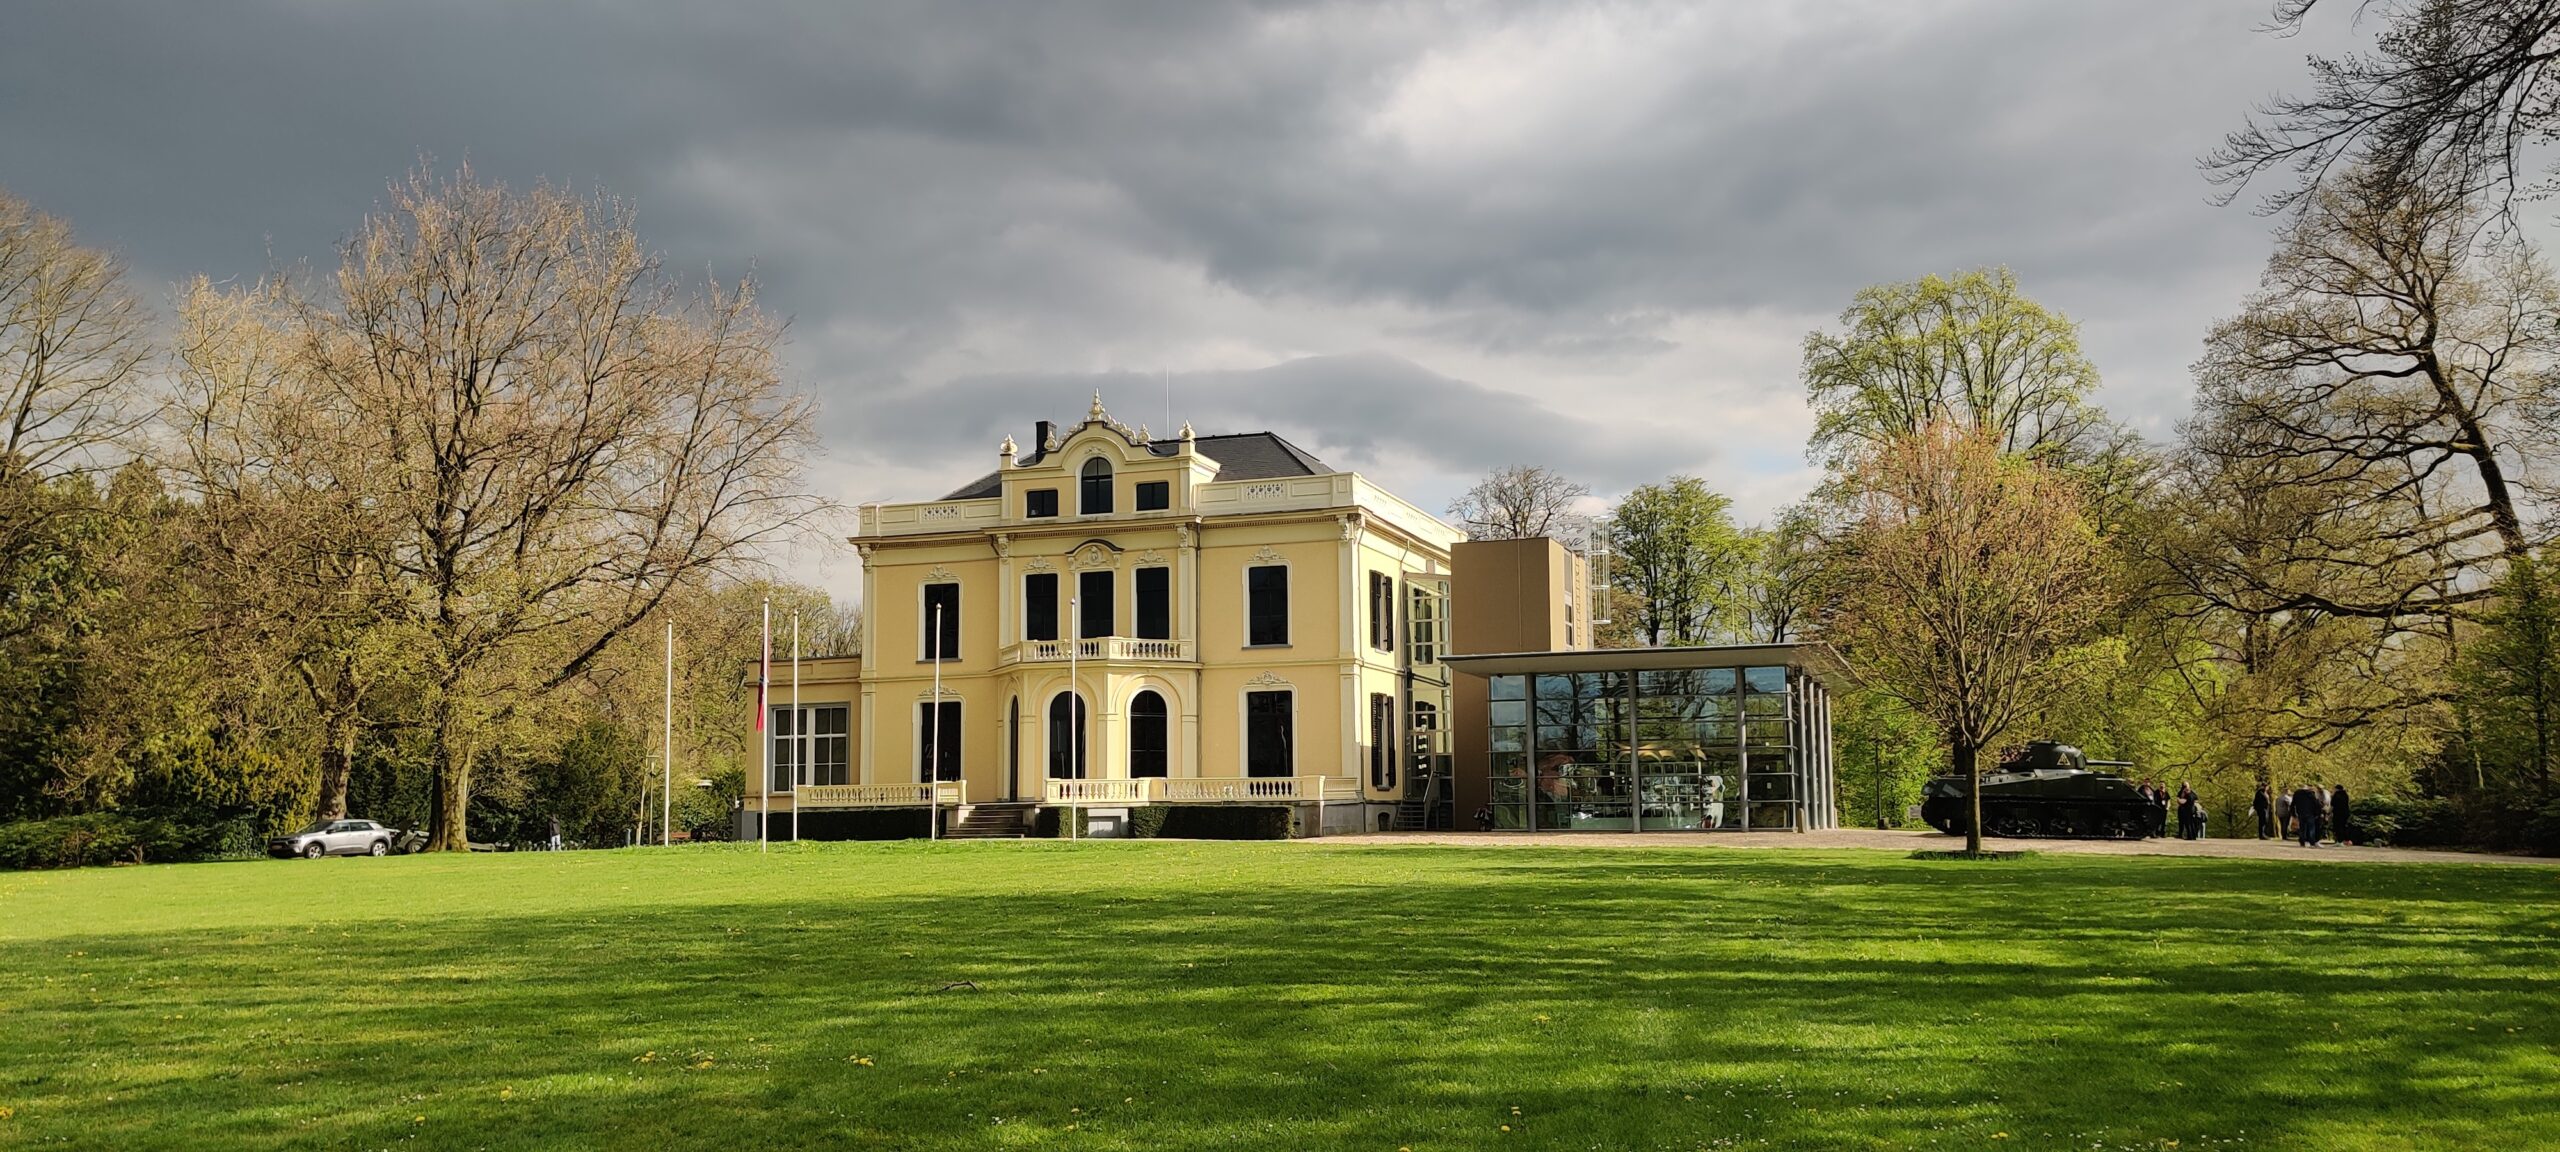 Hartenstein Villa, Home of the Airborne Museum, near Arnhem NL